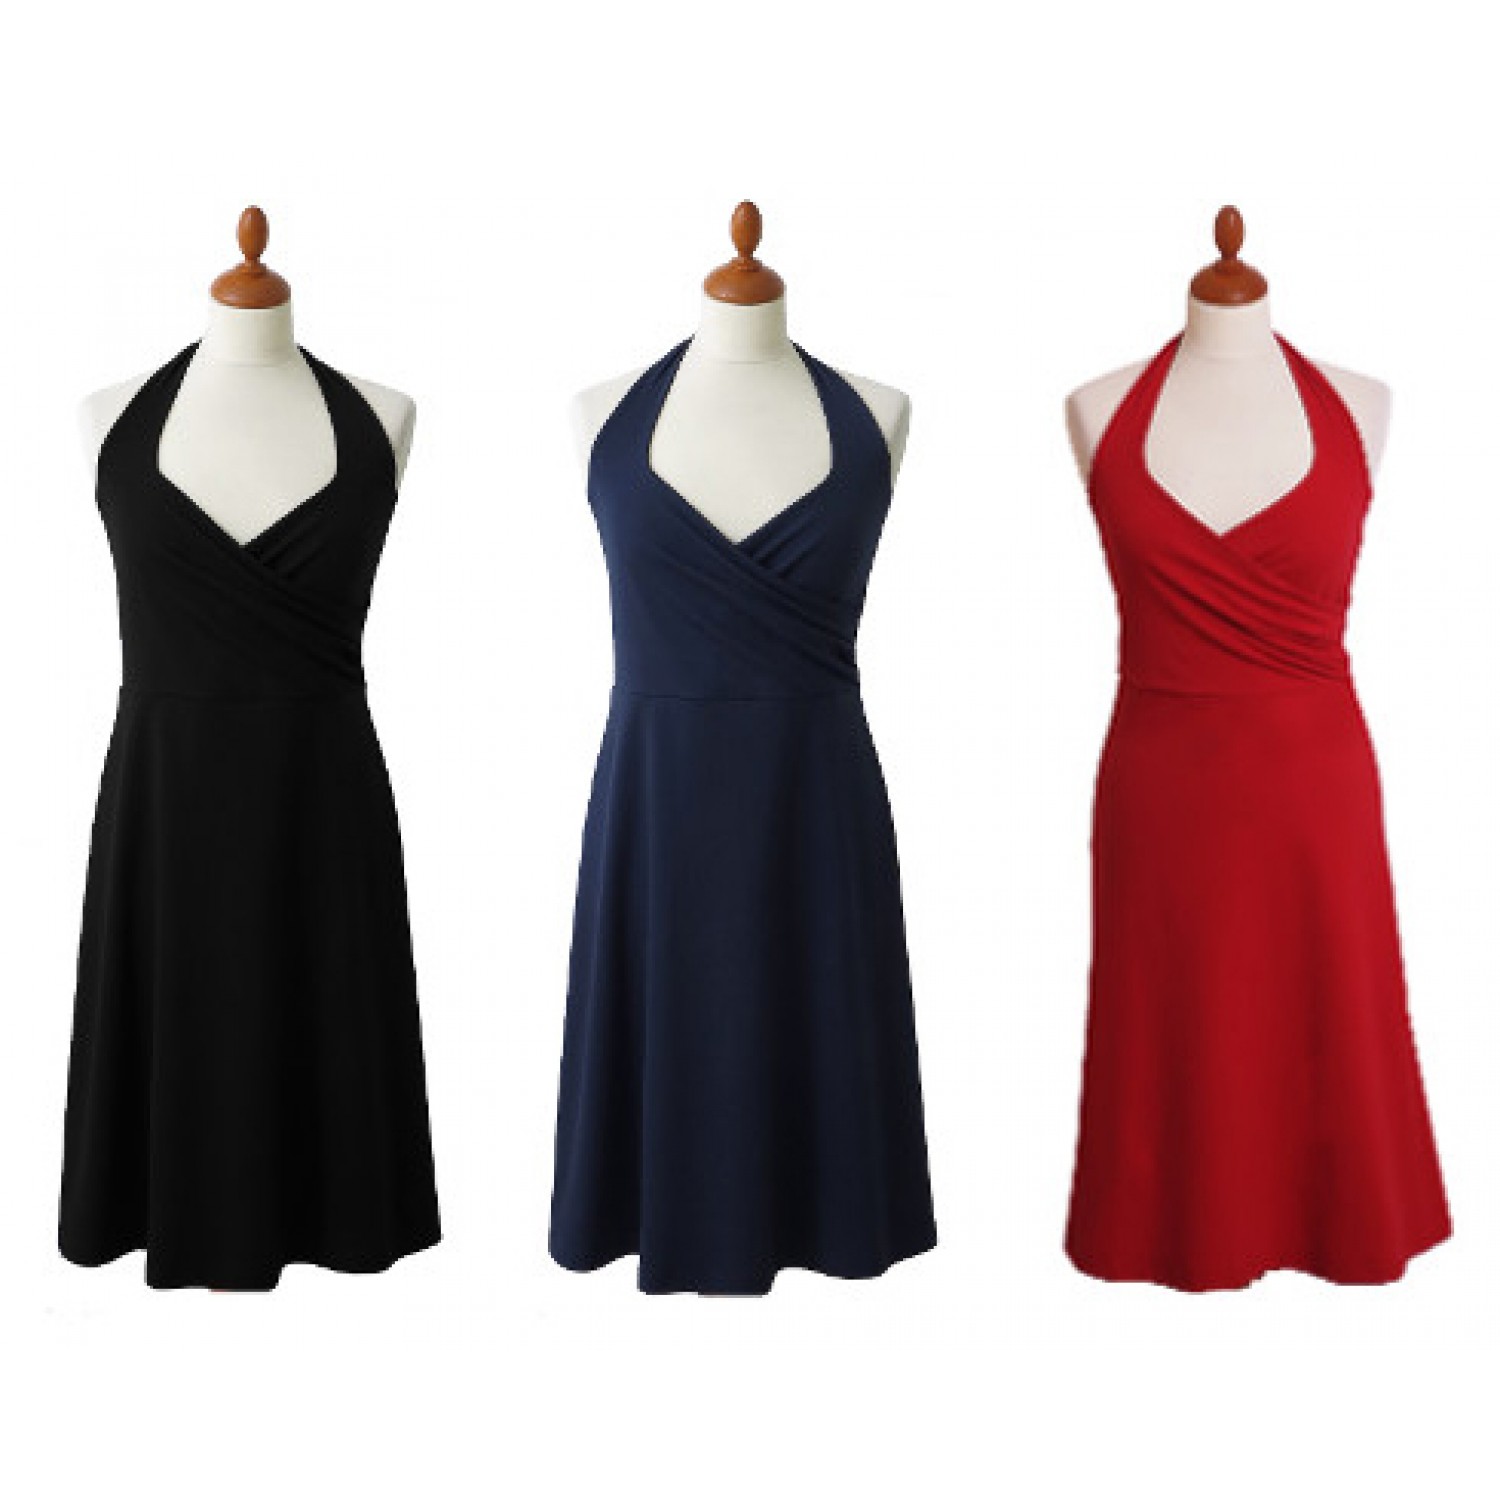 Neckholder Dress made of Organic Jersey | billbillundbill